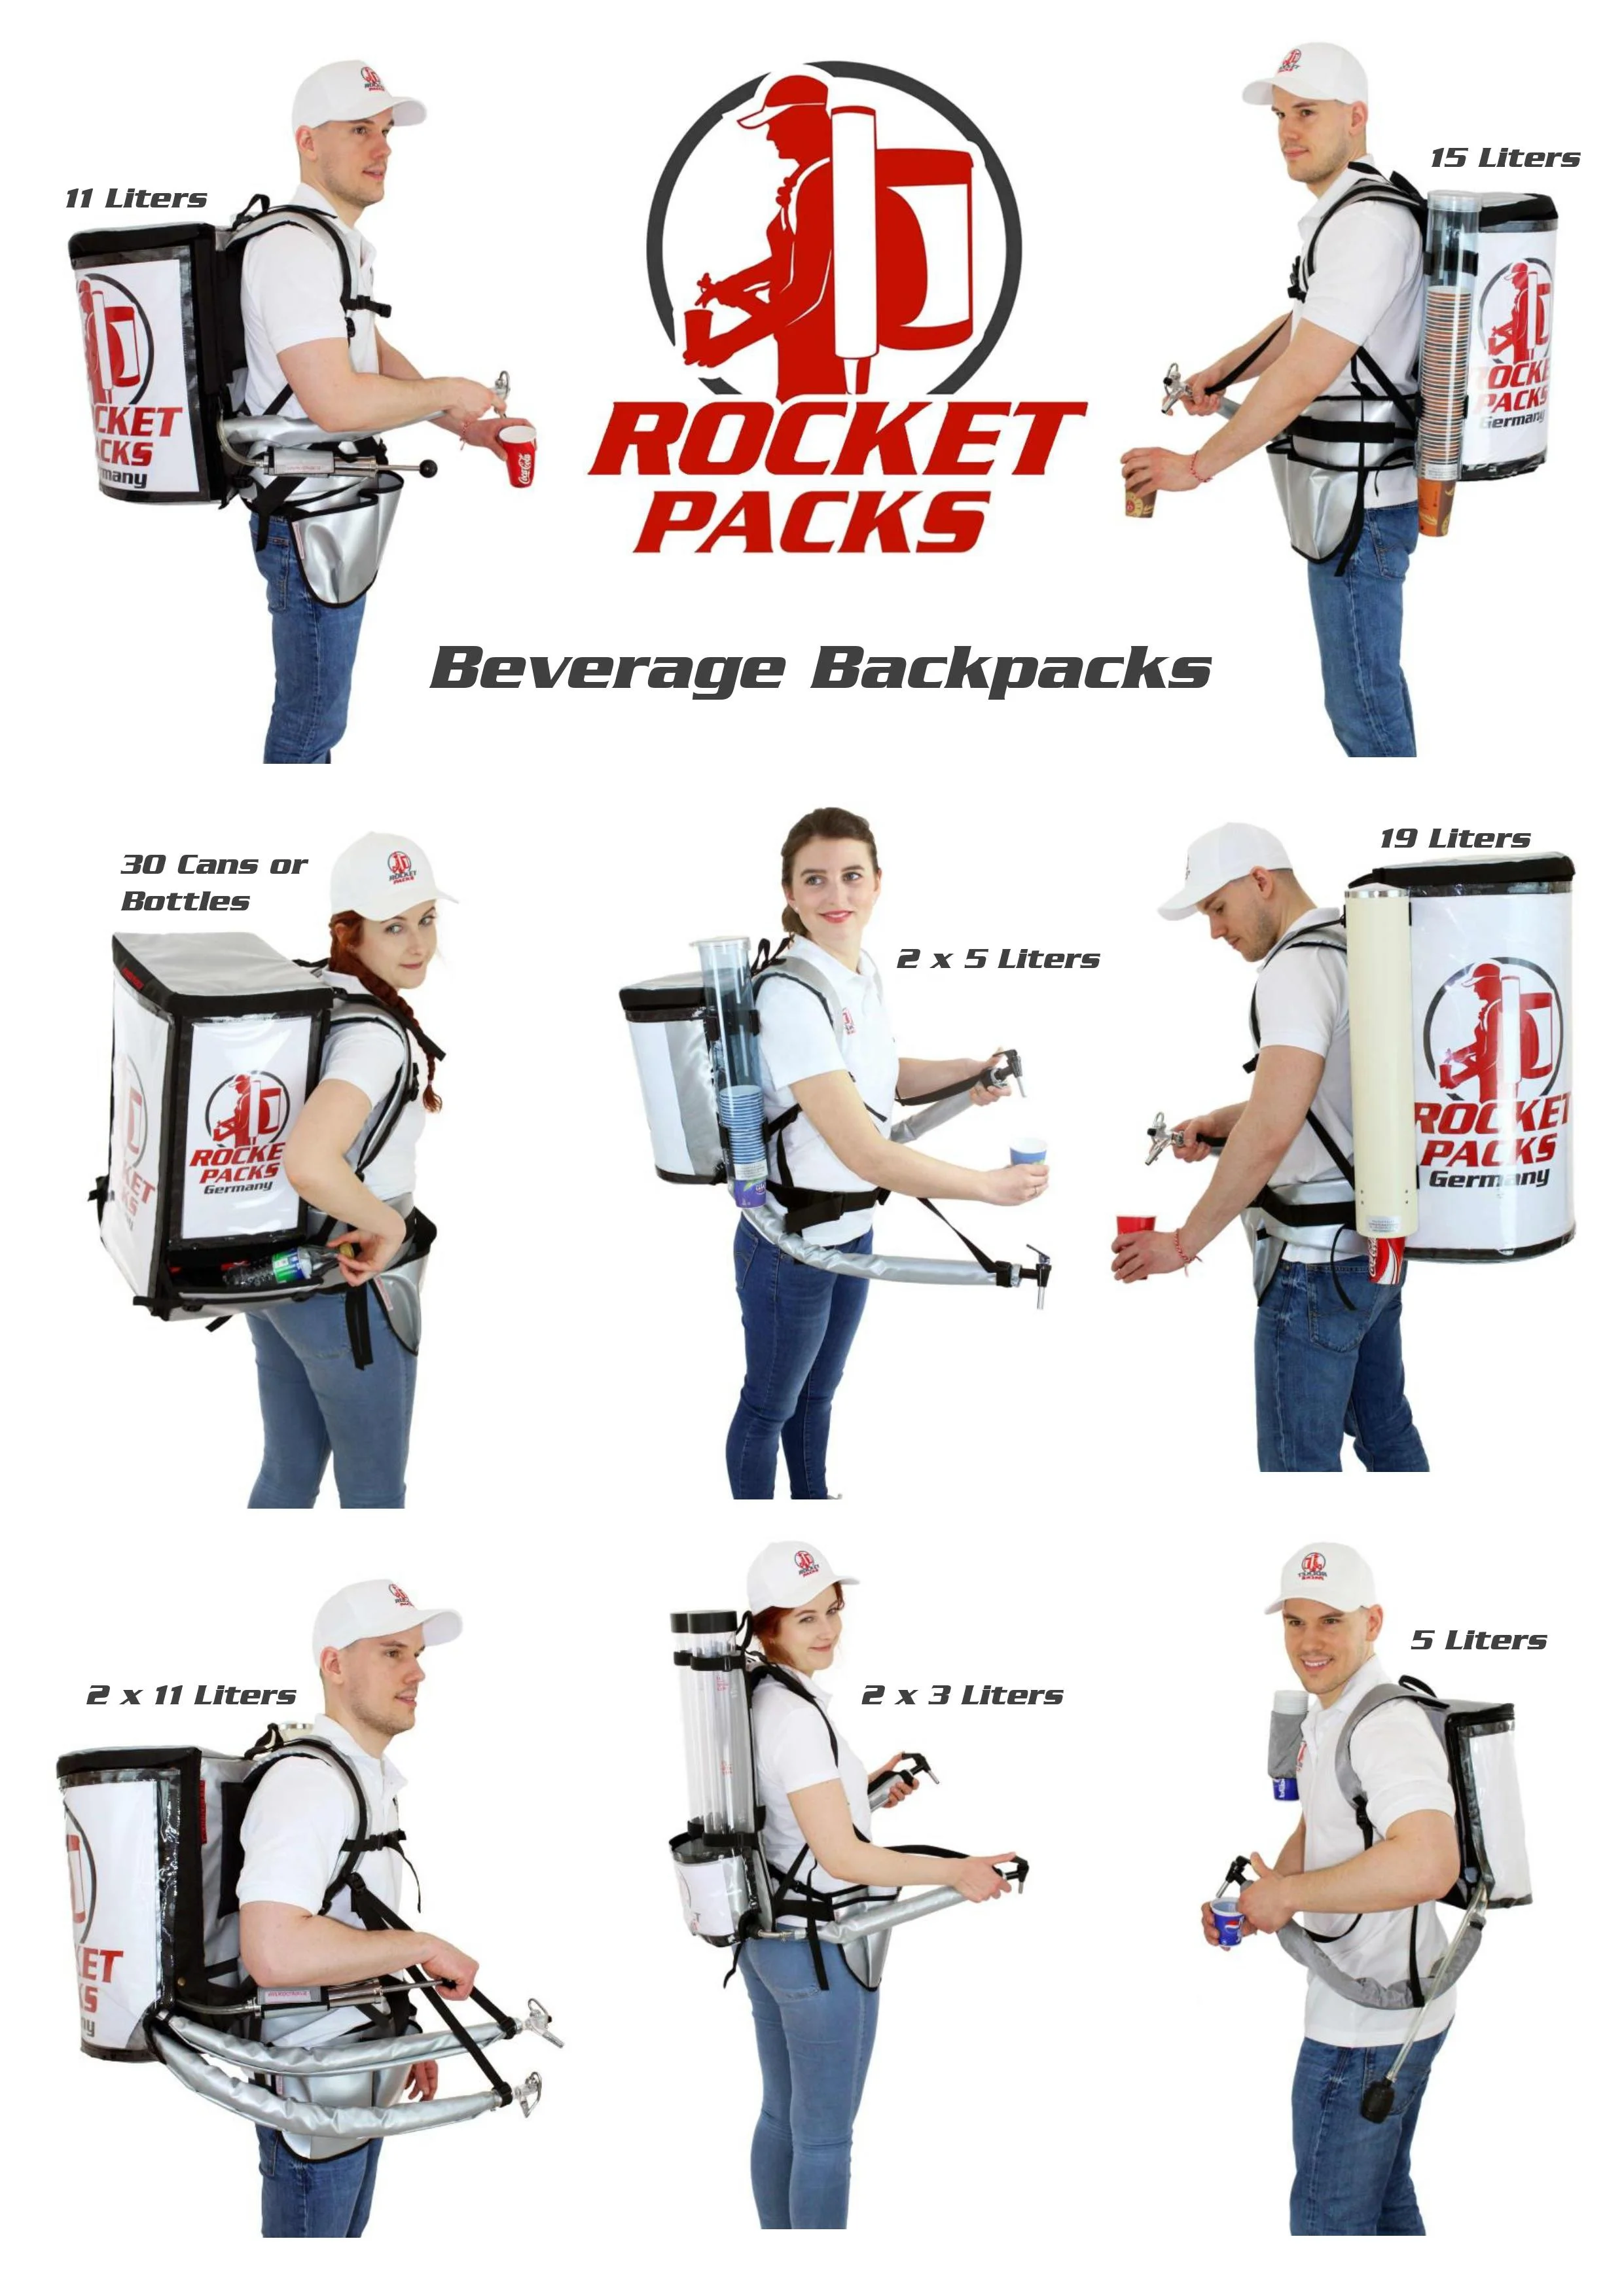 Coffee dispensing backpack ∣ Coffee hawking